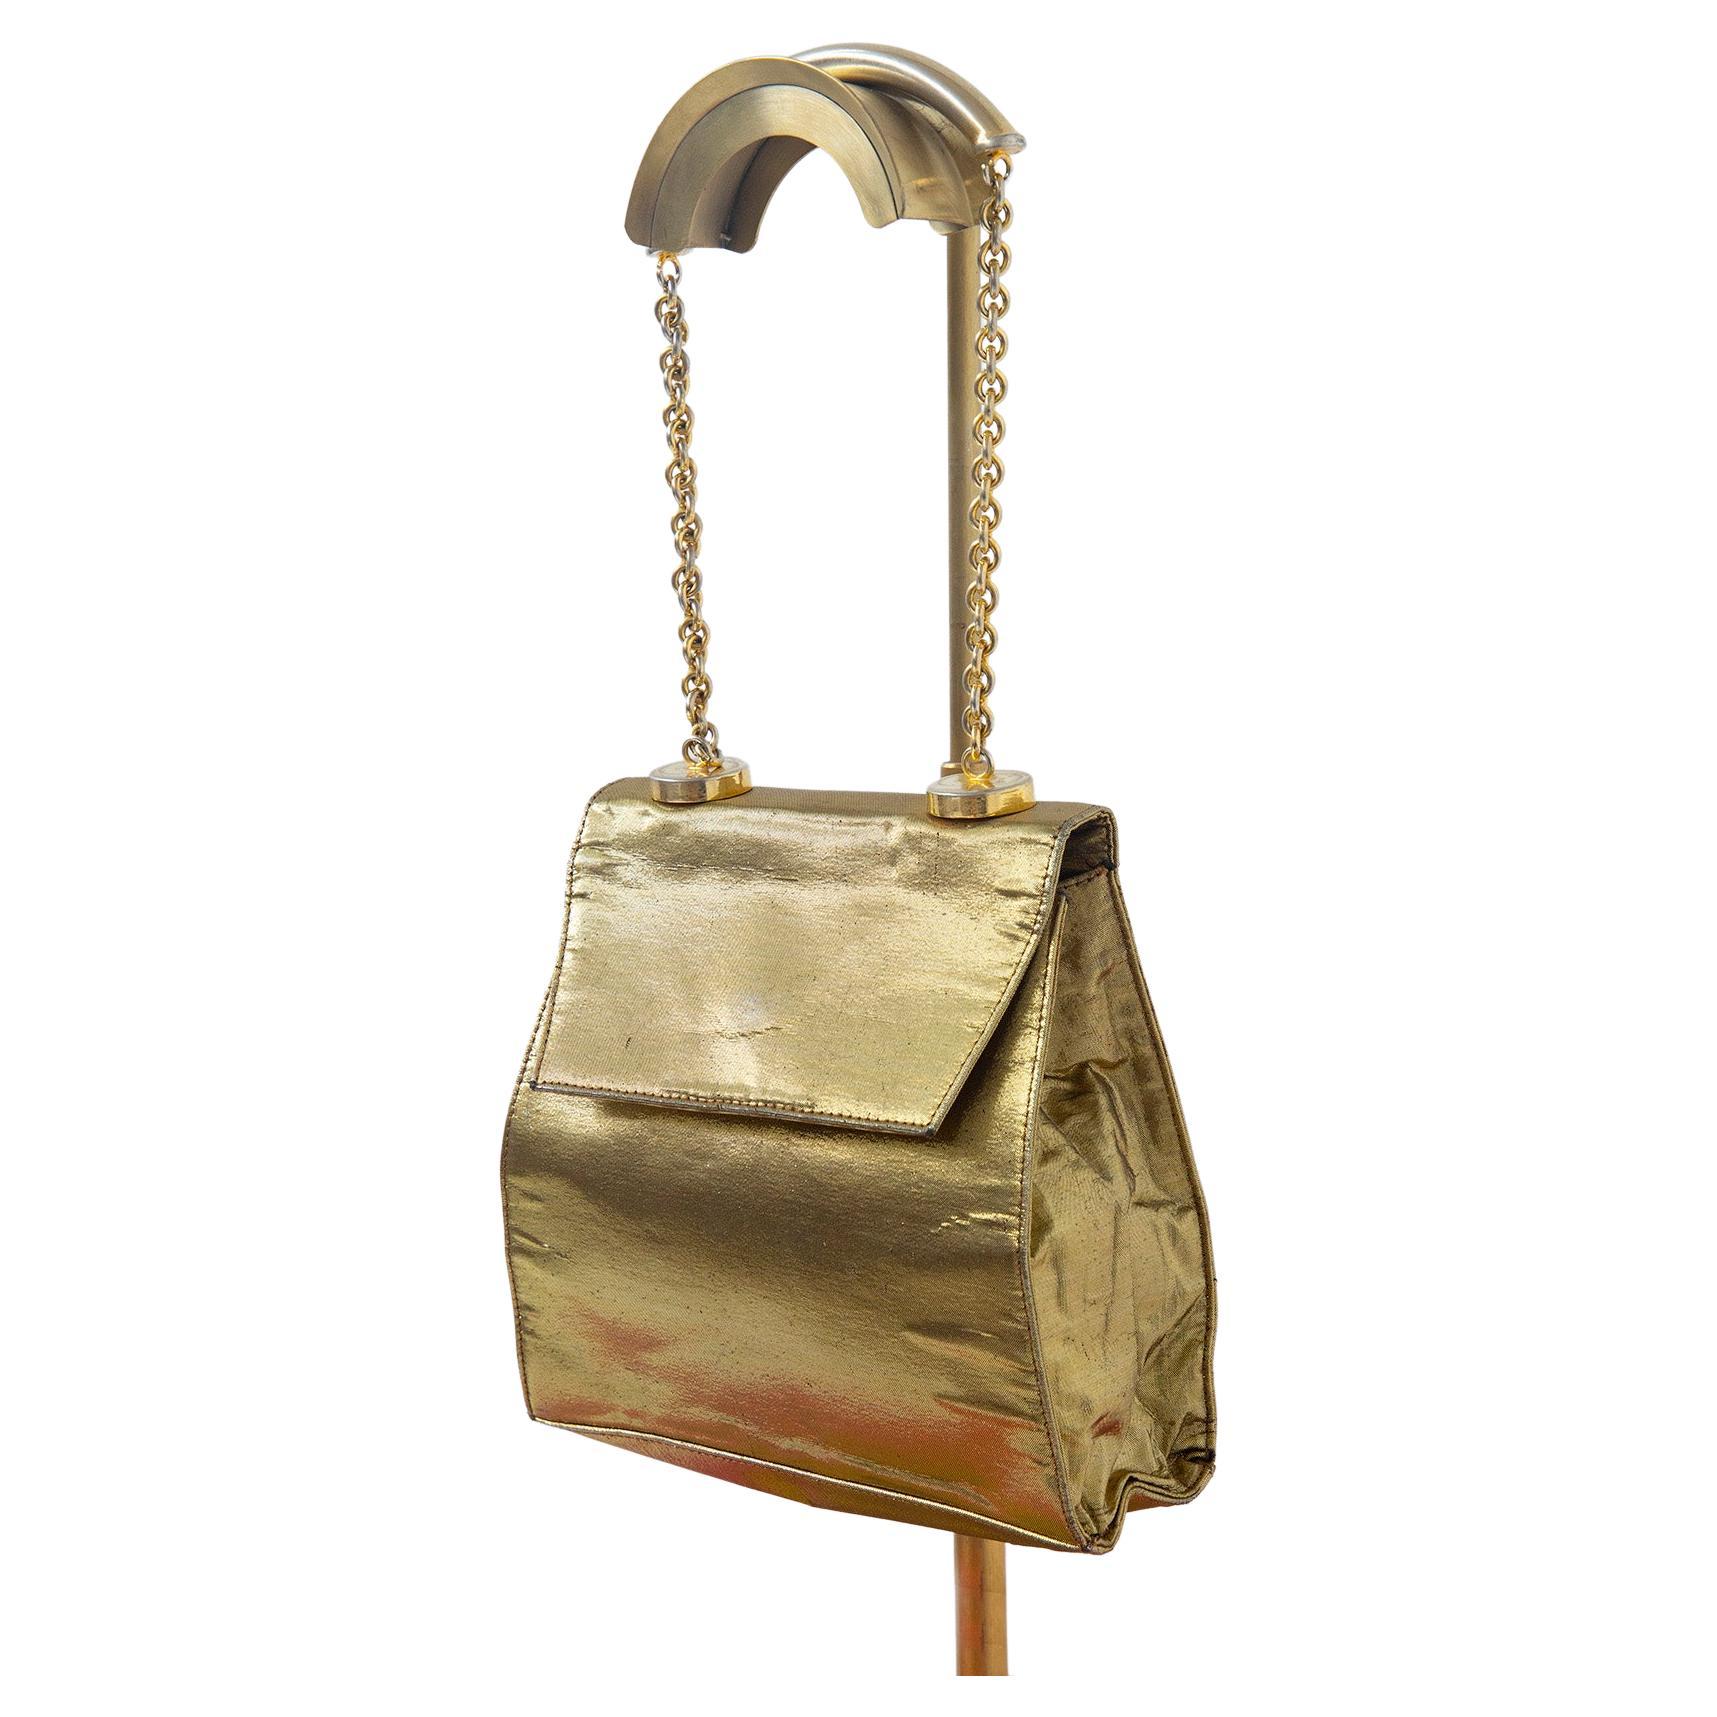 Gianni Versace vintage gold colored evening shoulder bag